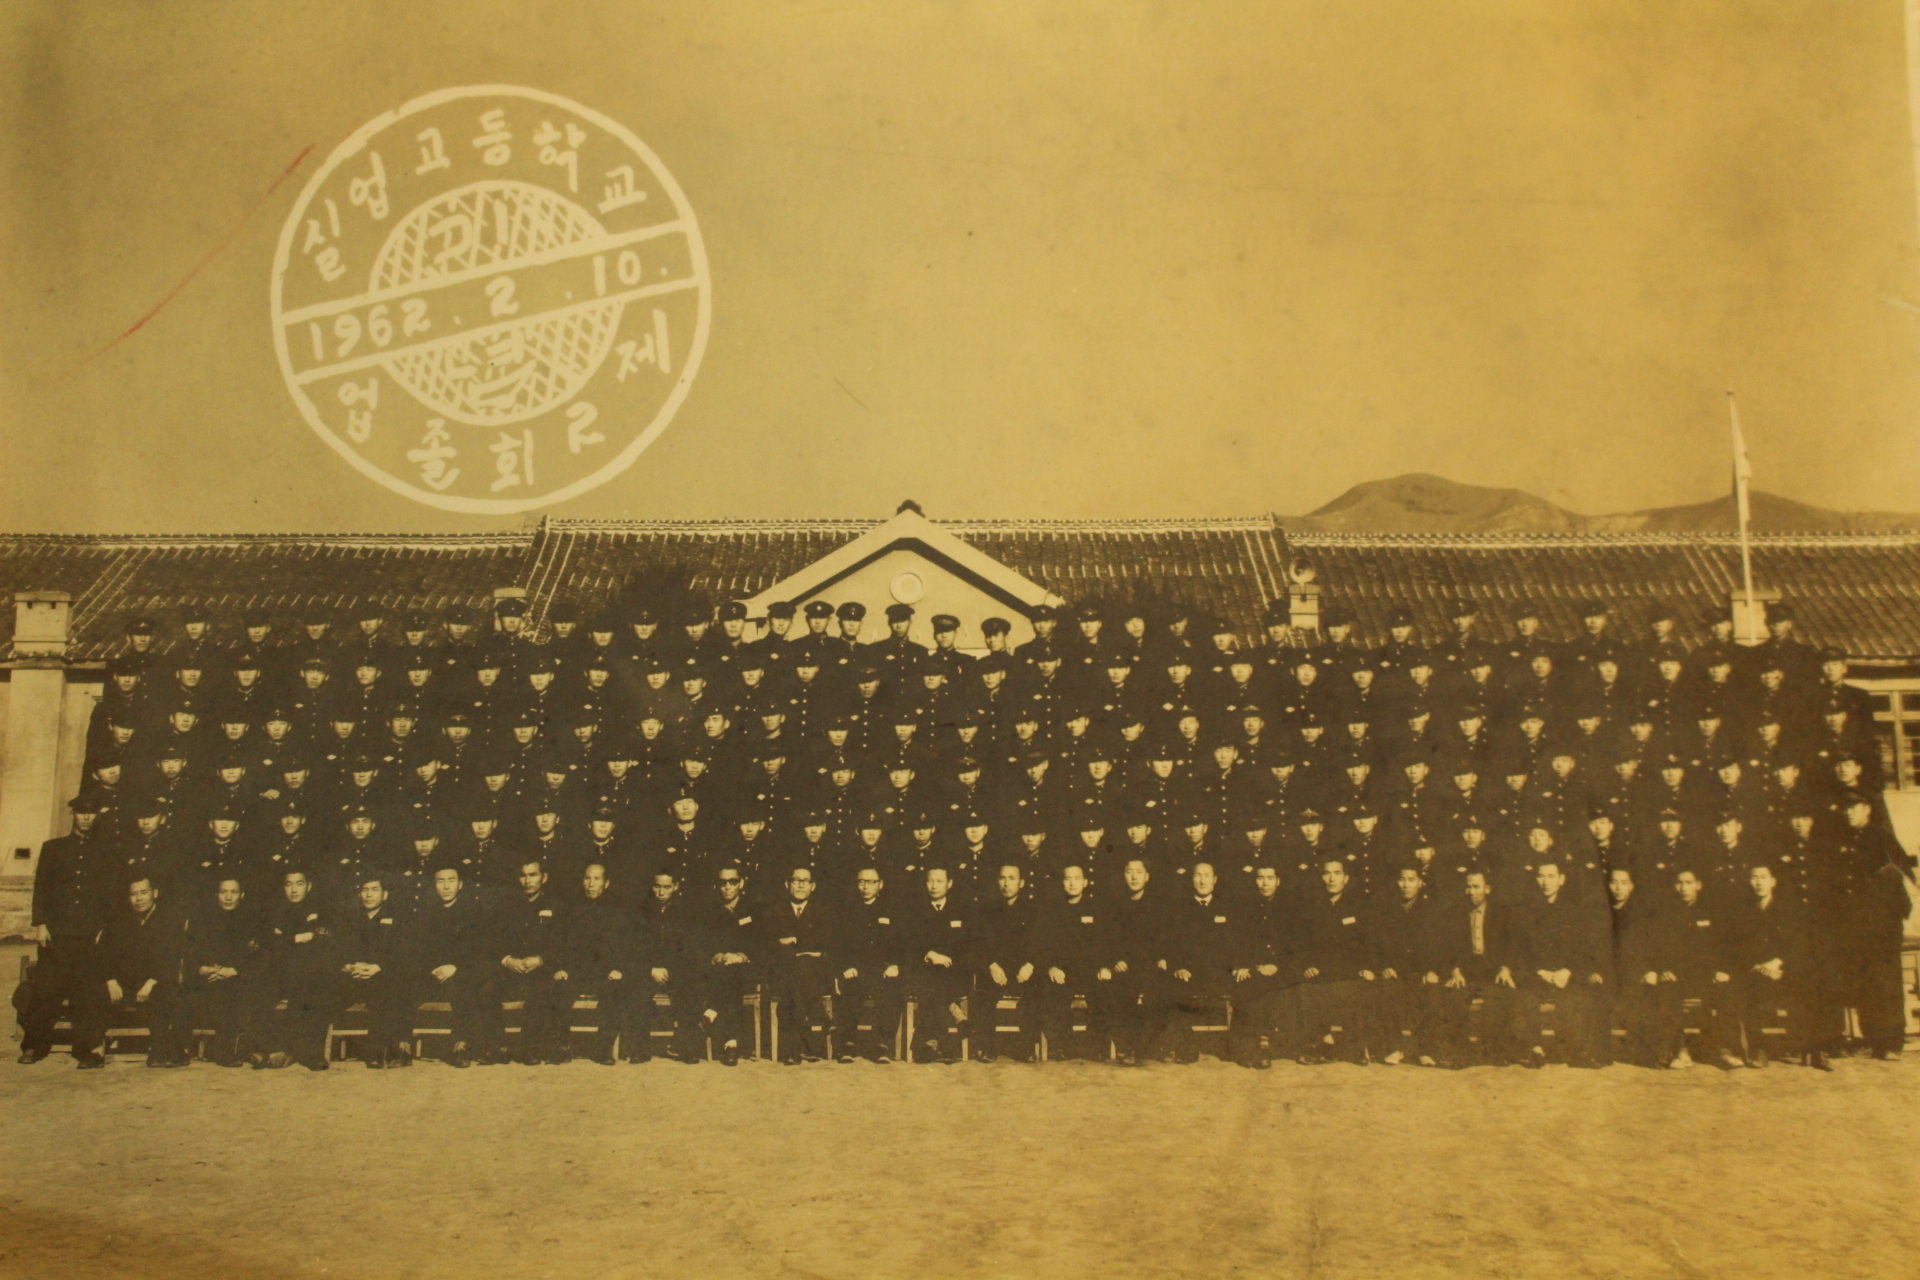 1964년 밀양실업고등학교 제4회 졸업기념 사진